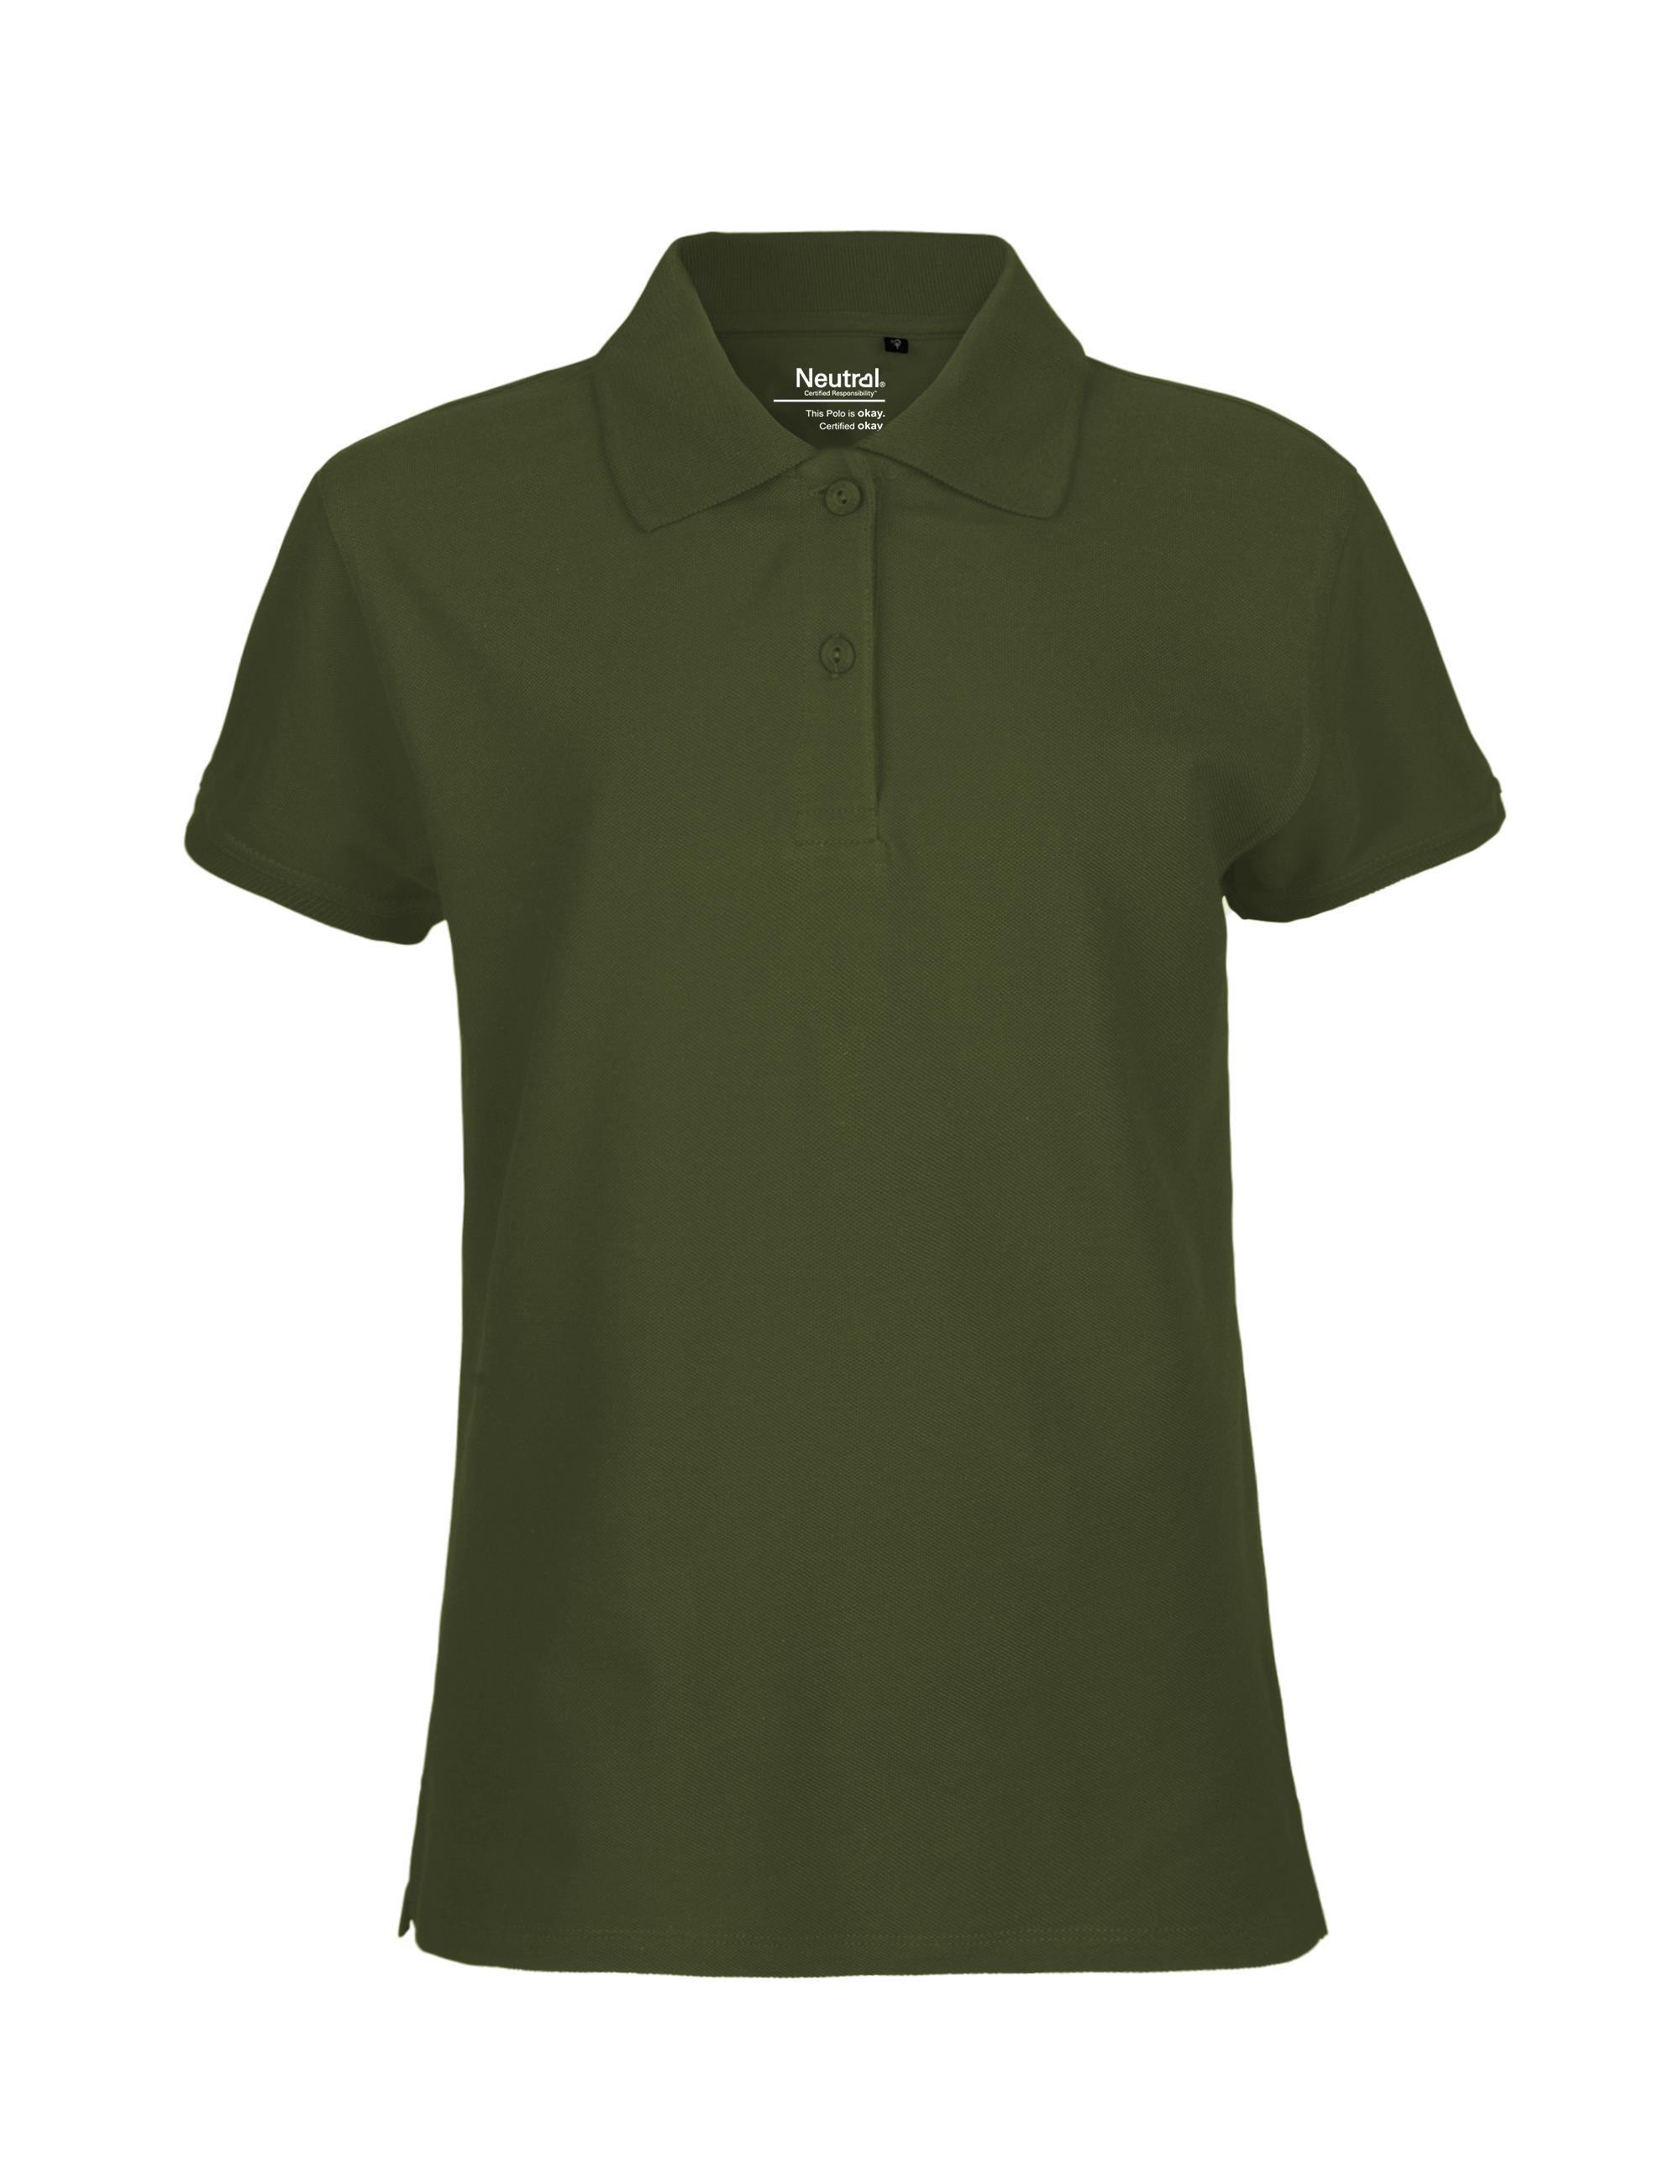 Organic Fairtrade Ladies Polo Shirt 235 g/m² Neutral® Military XL